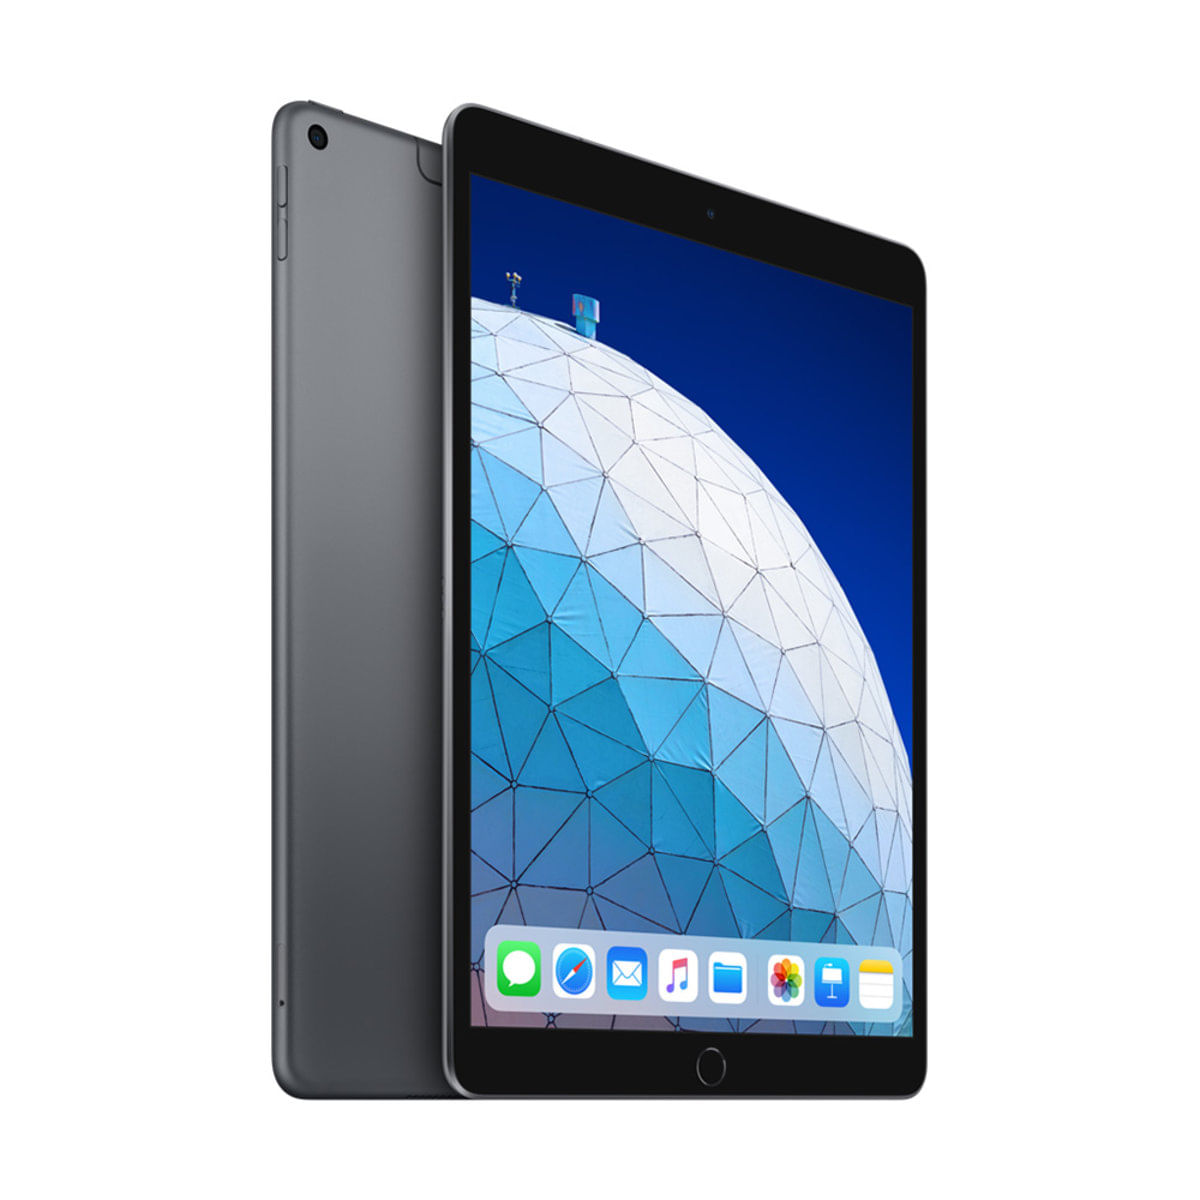 Menor preço em iPad Air de 10,5 polegadas Wi-Fi + Cellular 256GB - Cinza-espacial